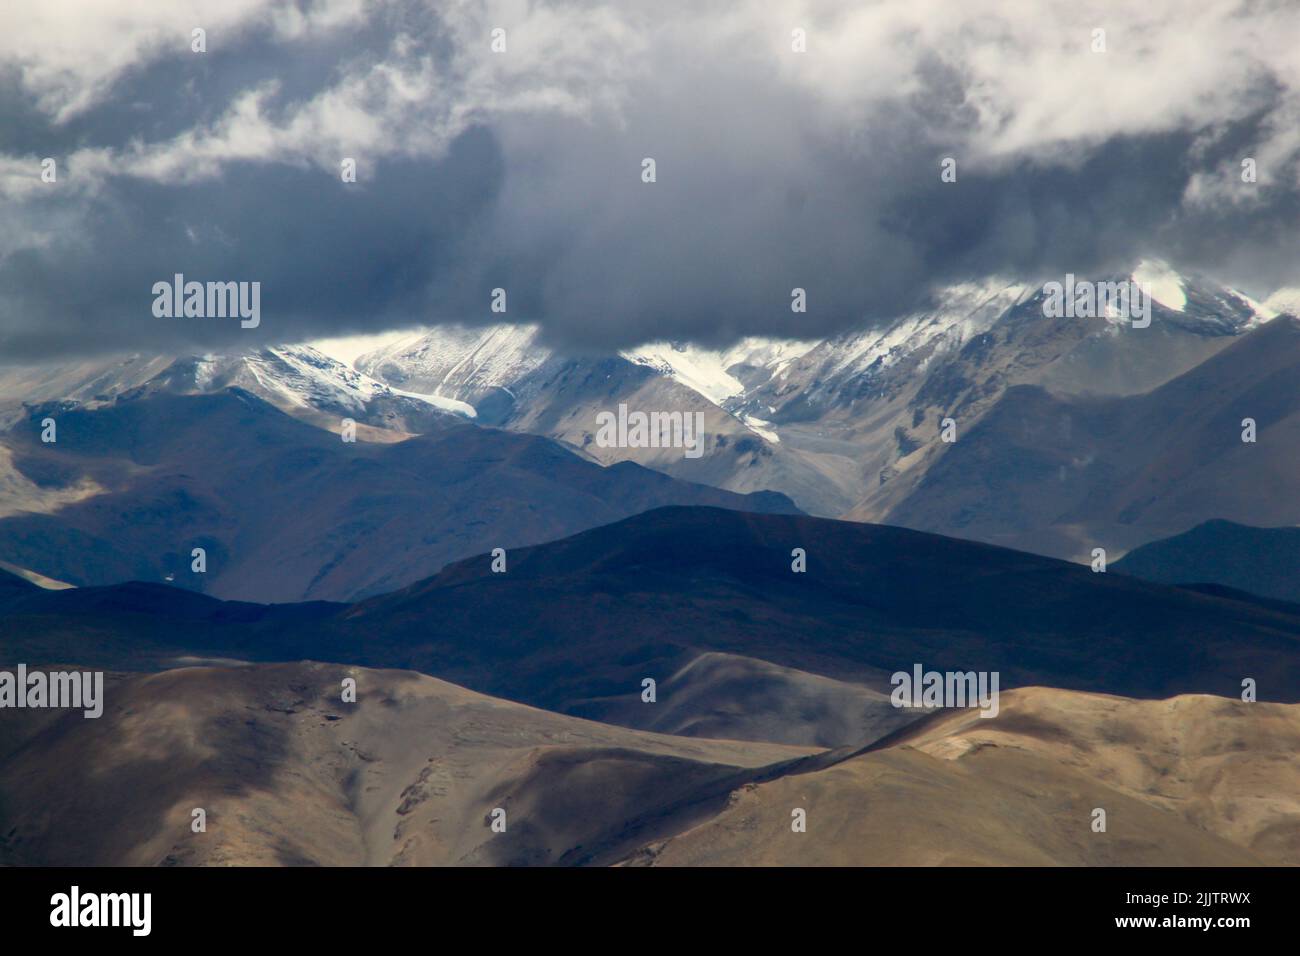 La cima del Monte Kailash sotto le nuvole scure in giorni bui Foto Stock